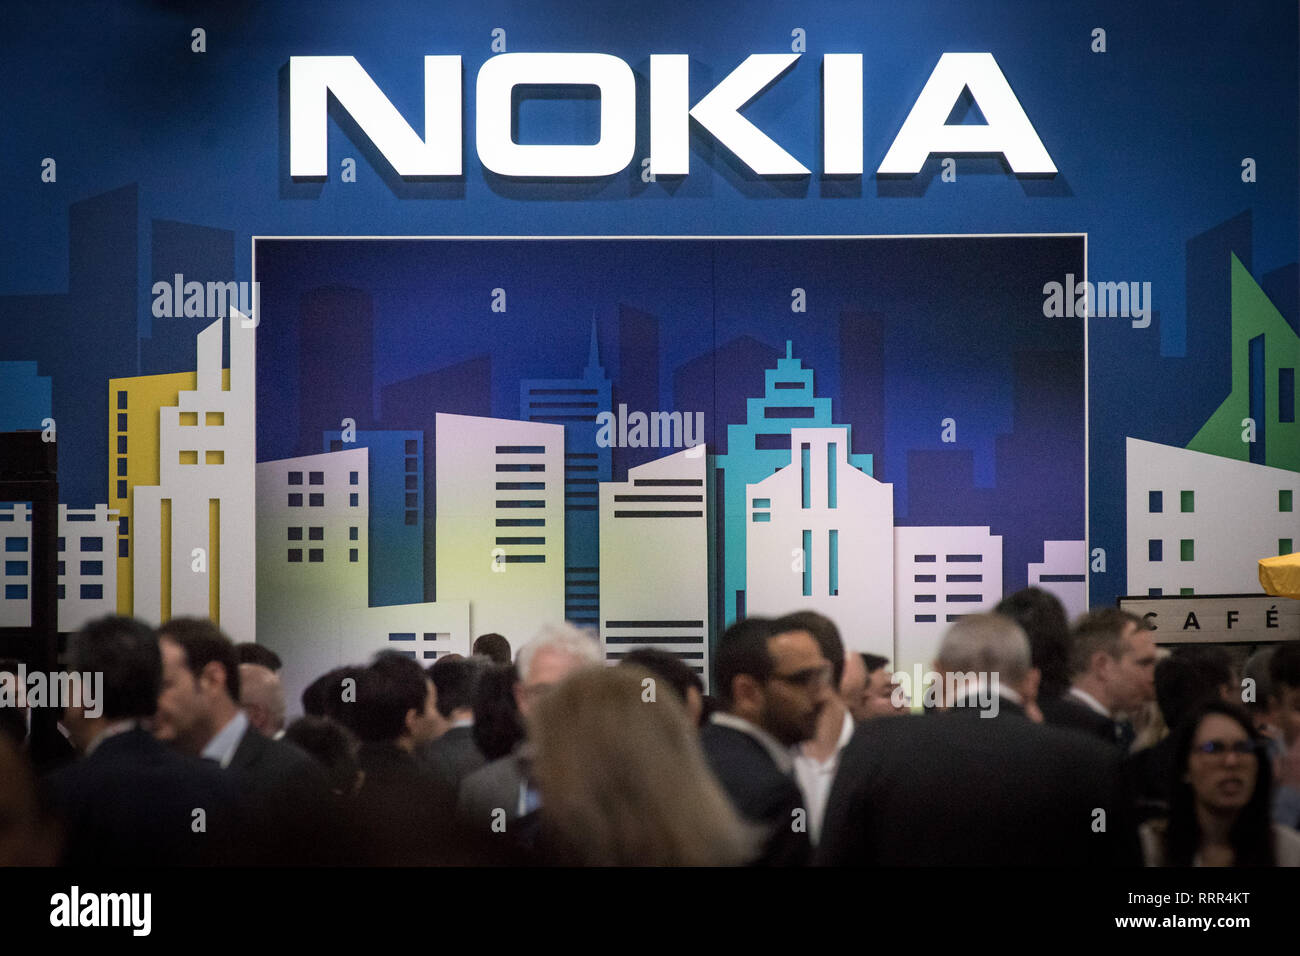 Nokia chỉ mất vài năm để vươn lên trở lại. Bạn nghĩ sao về điều này? Ảnh: @AFP.